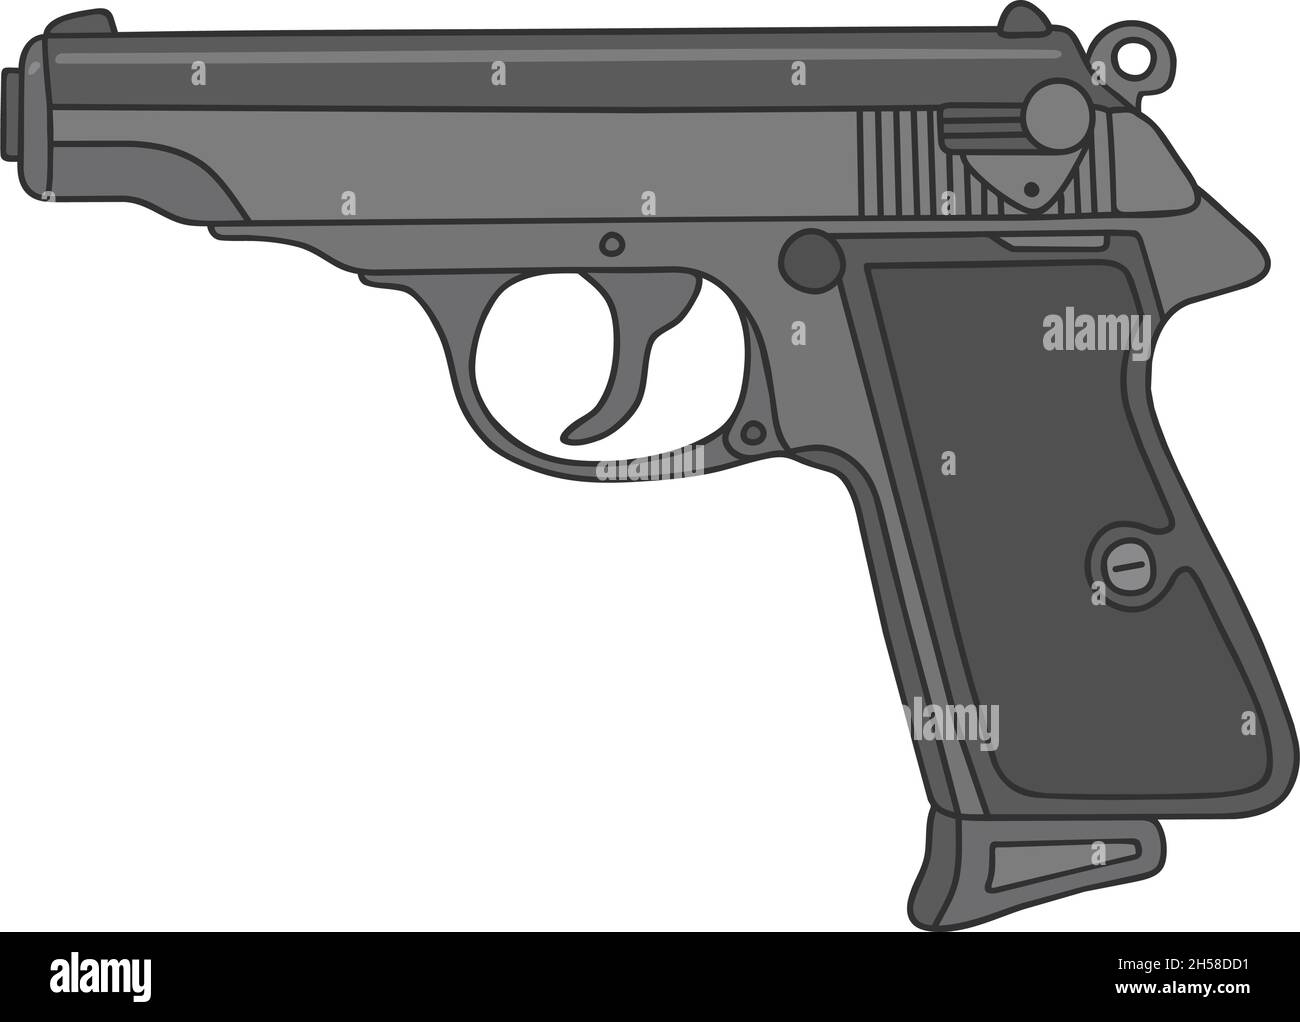 Il disegno a mano vettorizzato di una vecchia pistola spia Illustrazione Vettoriale